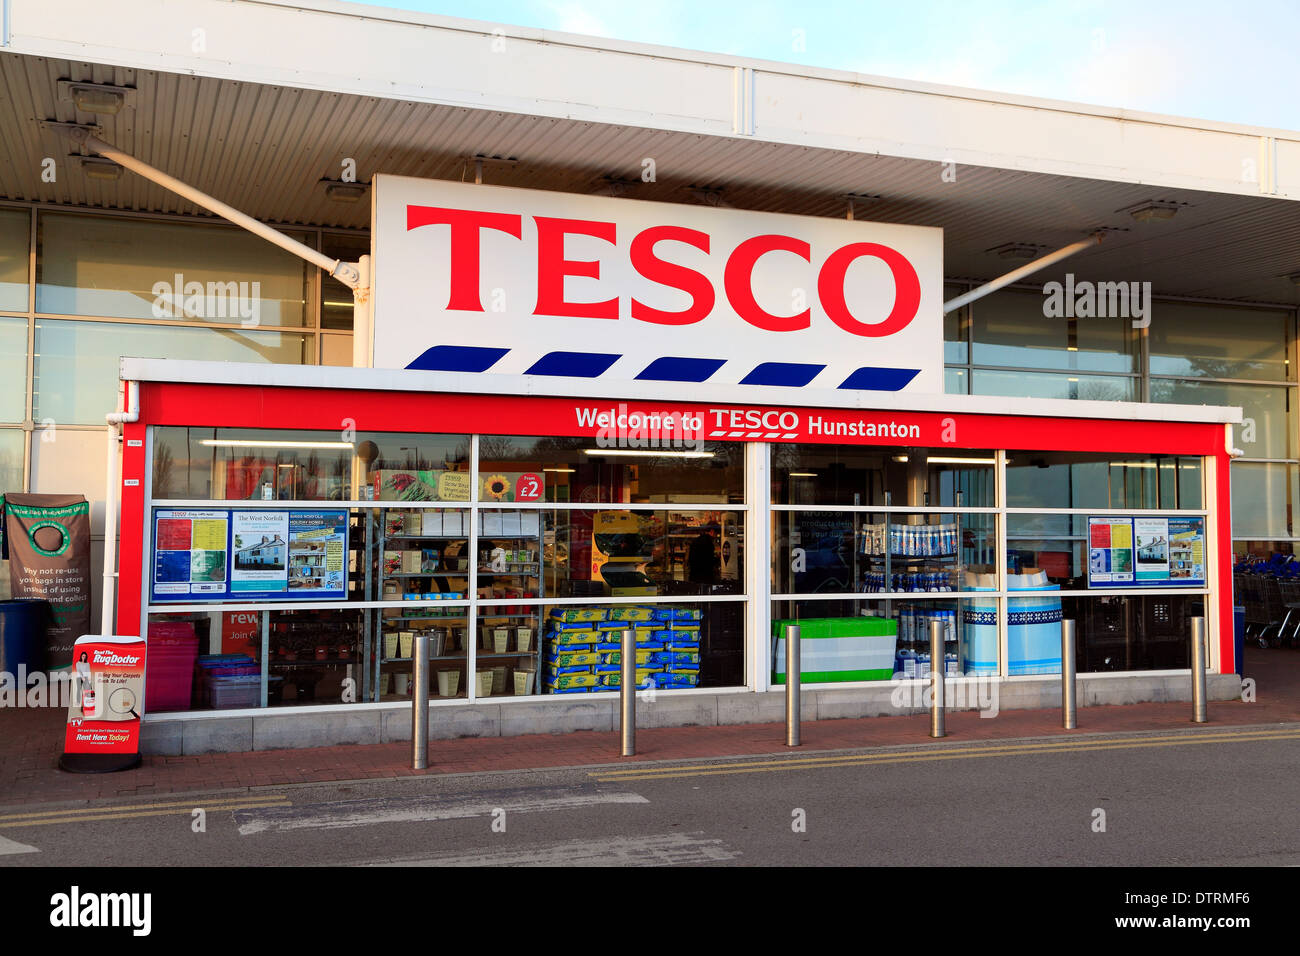 Tesco-Supermarkt, Hunstanton, Norfolk England UK britisches Englisch Supermärkte Logo logos Stockfoto